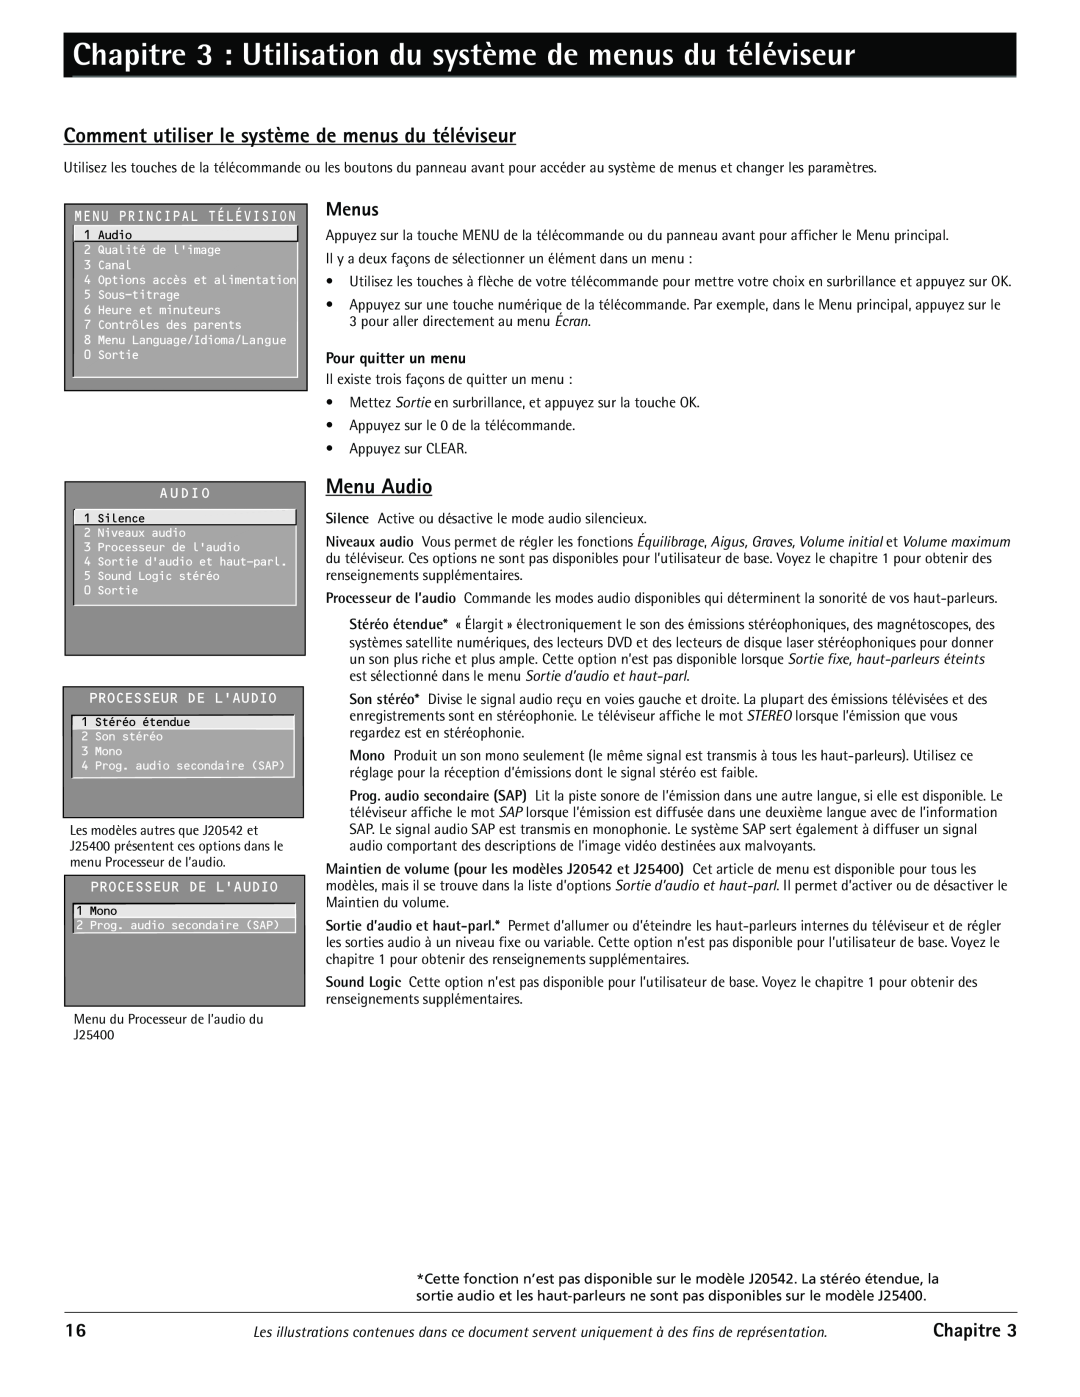 RCA J20542 Chapitre 3 Utilisation du systme de menus du tŽlŽviseur, Comment utiliser le système de menus du téléviseur 